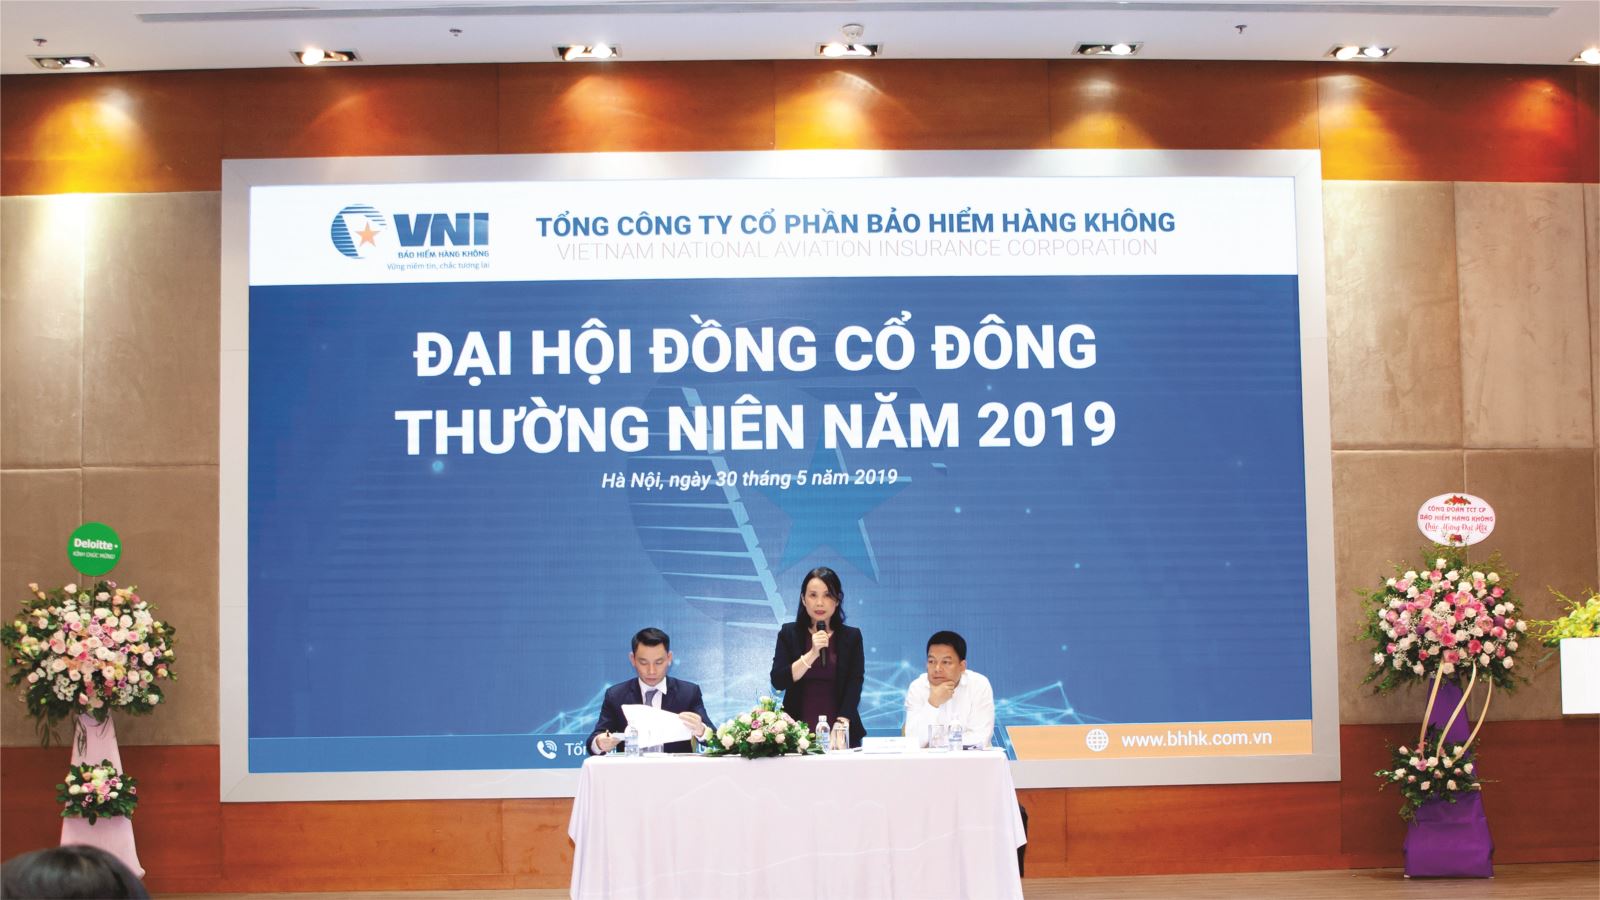 VNI tổ chức Đại hội đồng cổ đông thường niên 2019